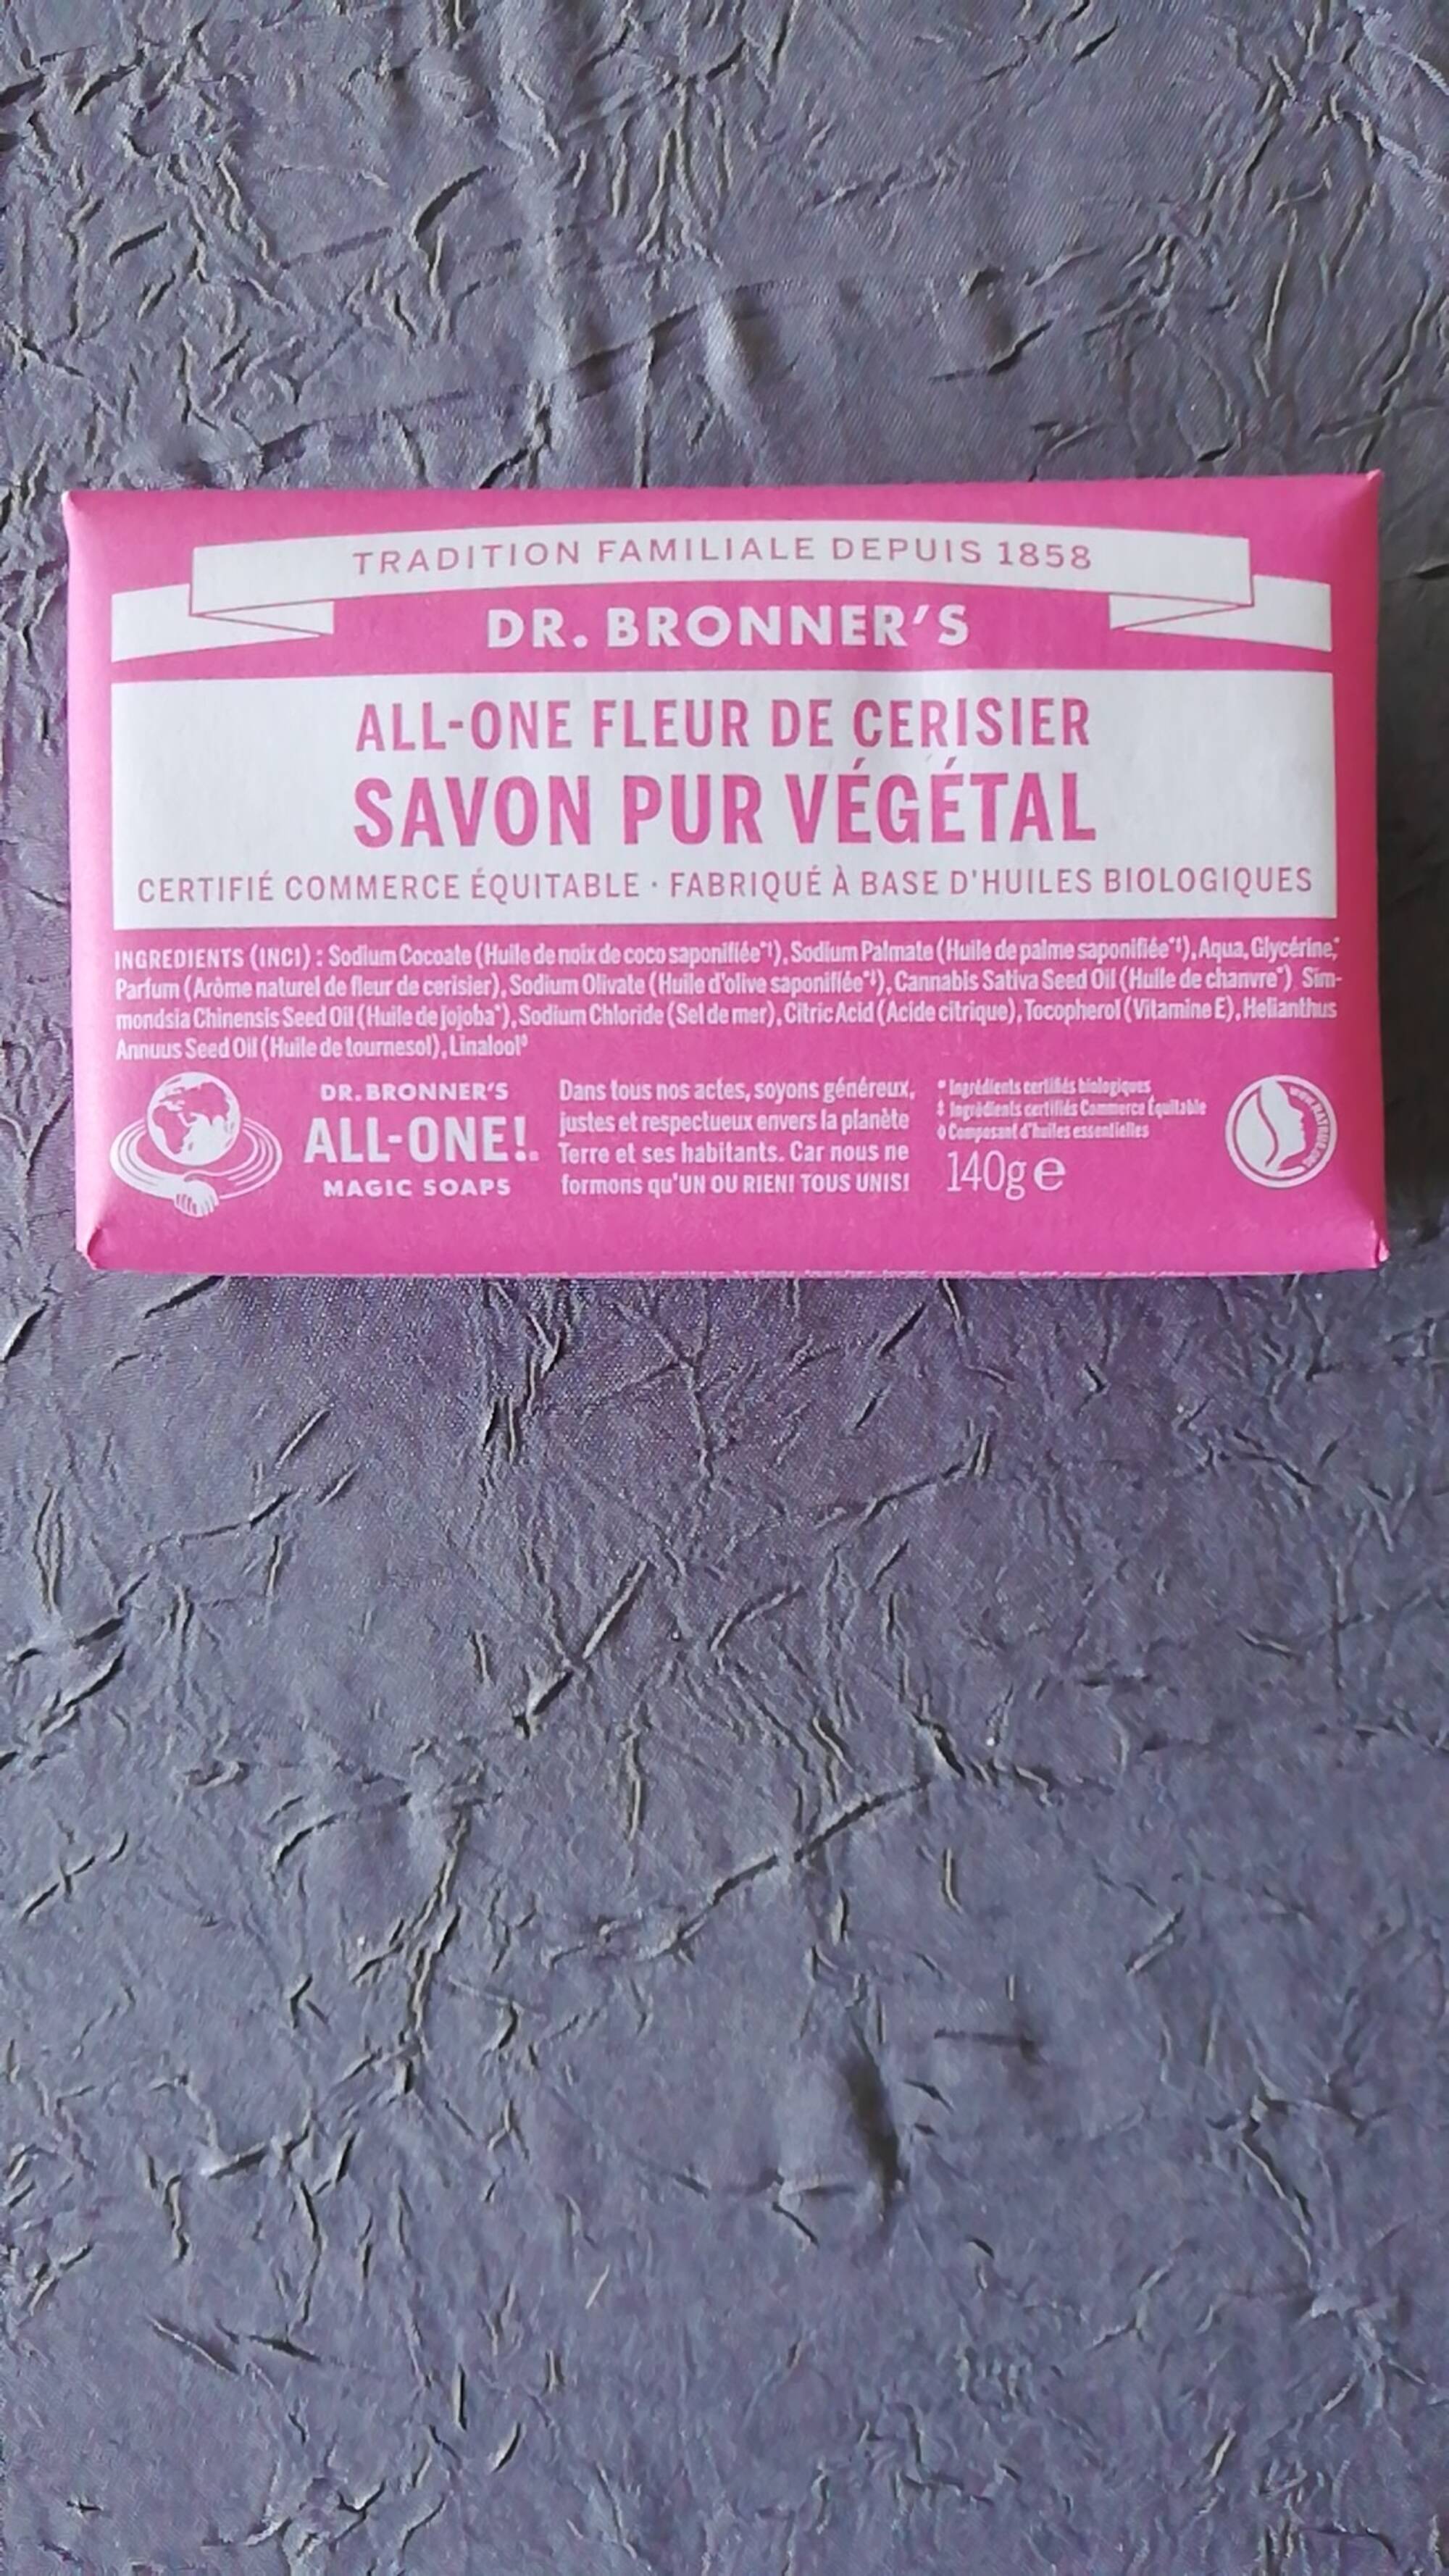 DR. BRONNER'S - All-one fleur de cerisier - Savon pur végétal